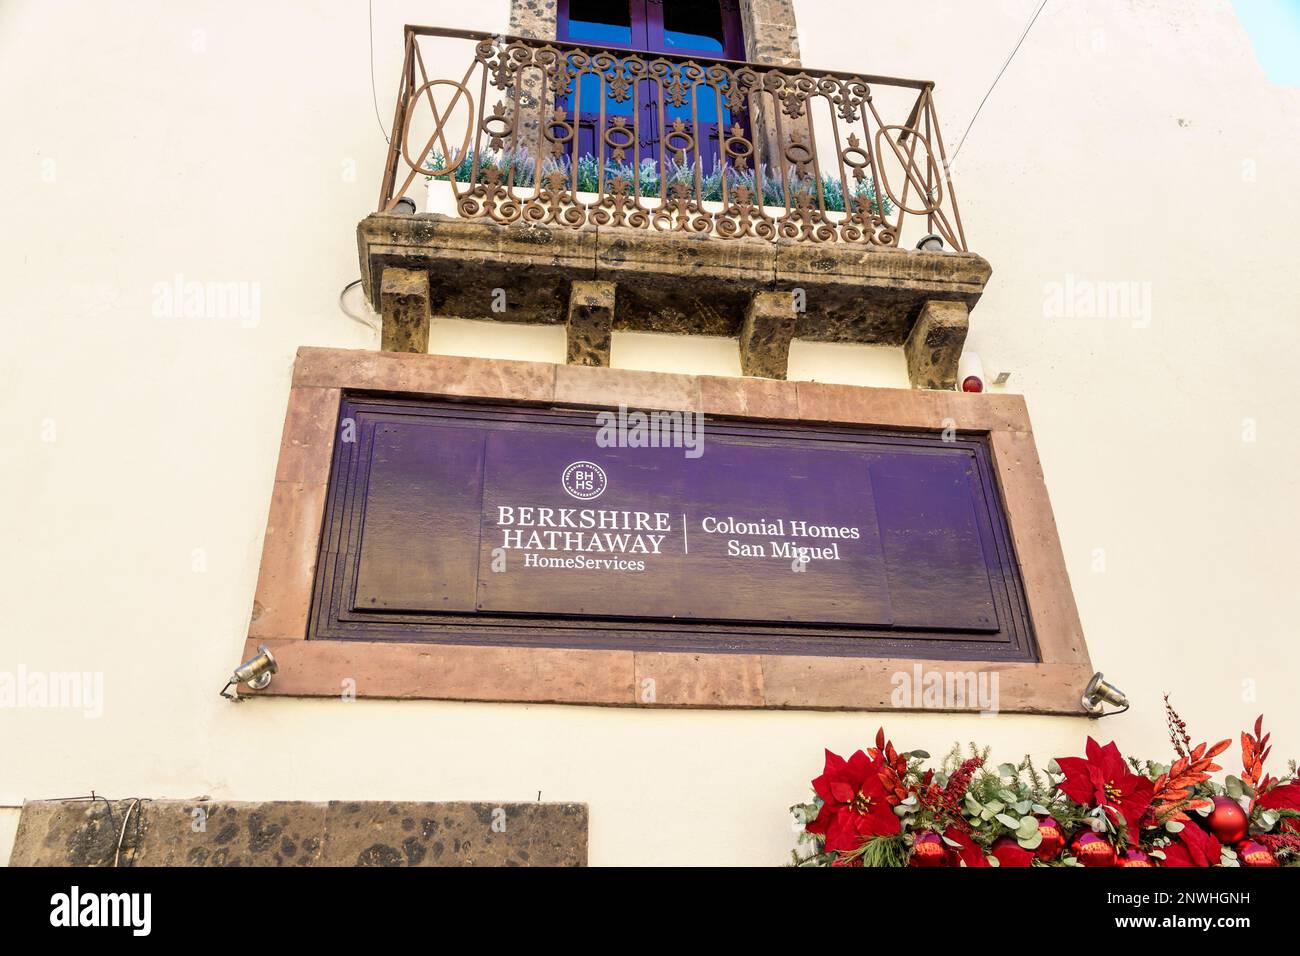 San Miguel de Allende Guanajuato Mexico, historisches Zentrum von Historico Central, Berkshire Hathaway HomeServices Immobilienbüro, Außenansicht, b Stockfoto